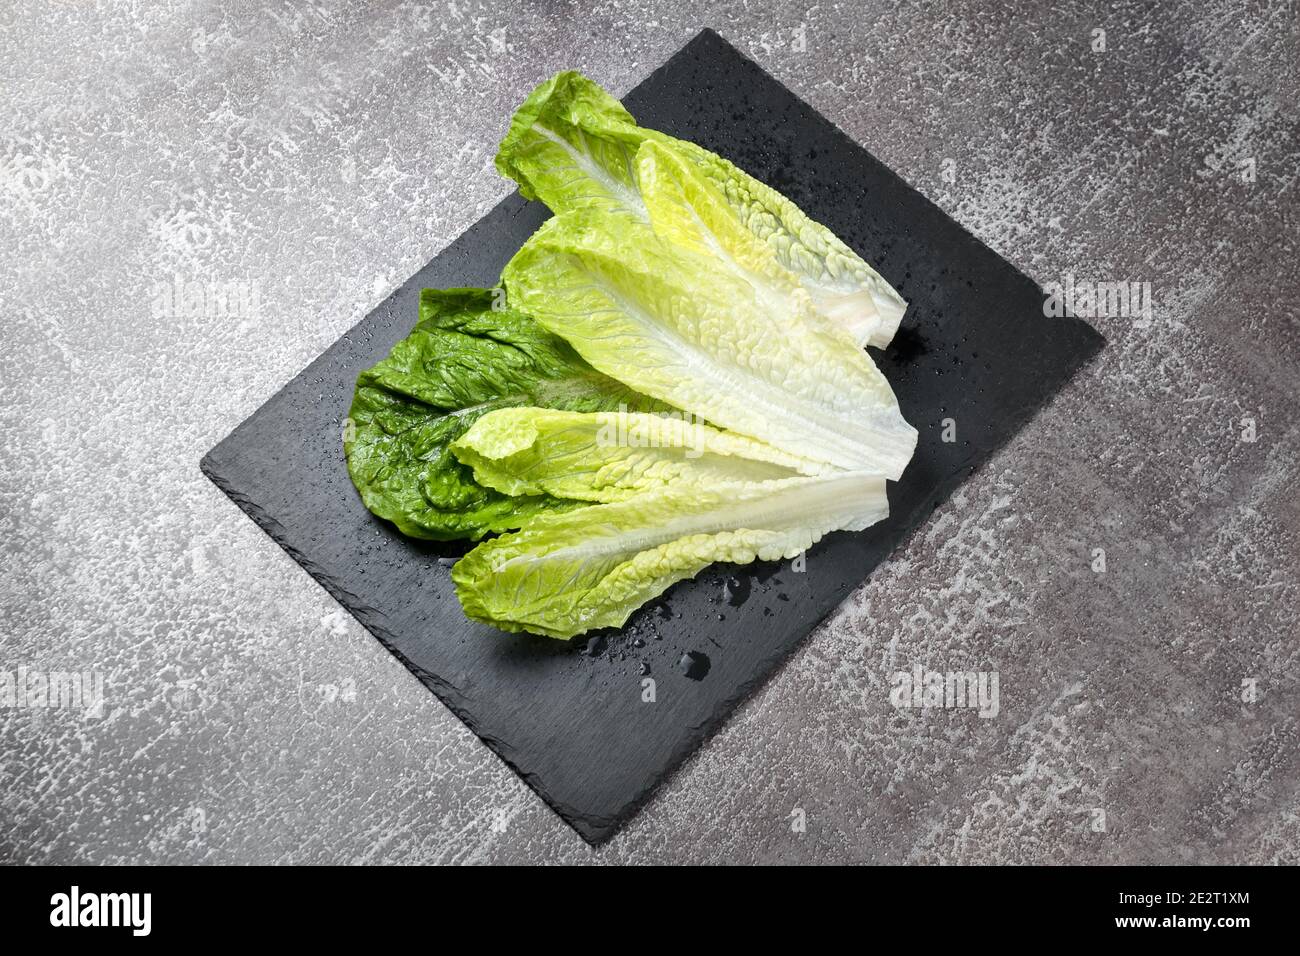 Frisch gewaschenen grünen Salat auf schwarzem Schiefer Schneidebrett bereit zum Kochen. Zutaten zum Kochen, vegetarische Ernährung, gesunde Ernährung Stockfoto